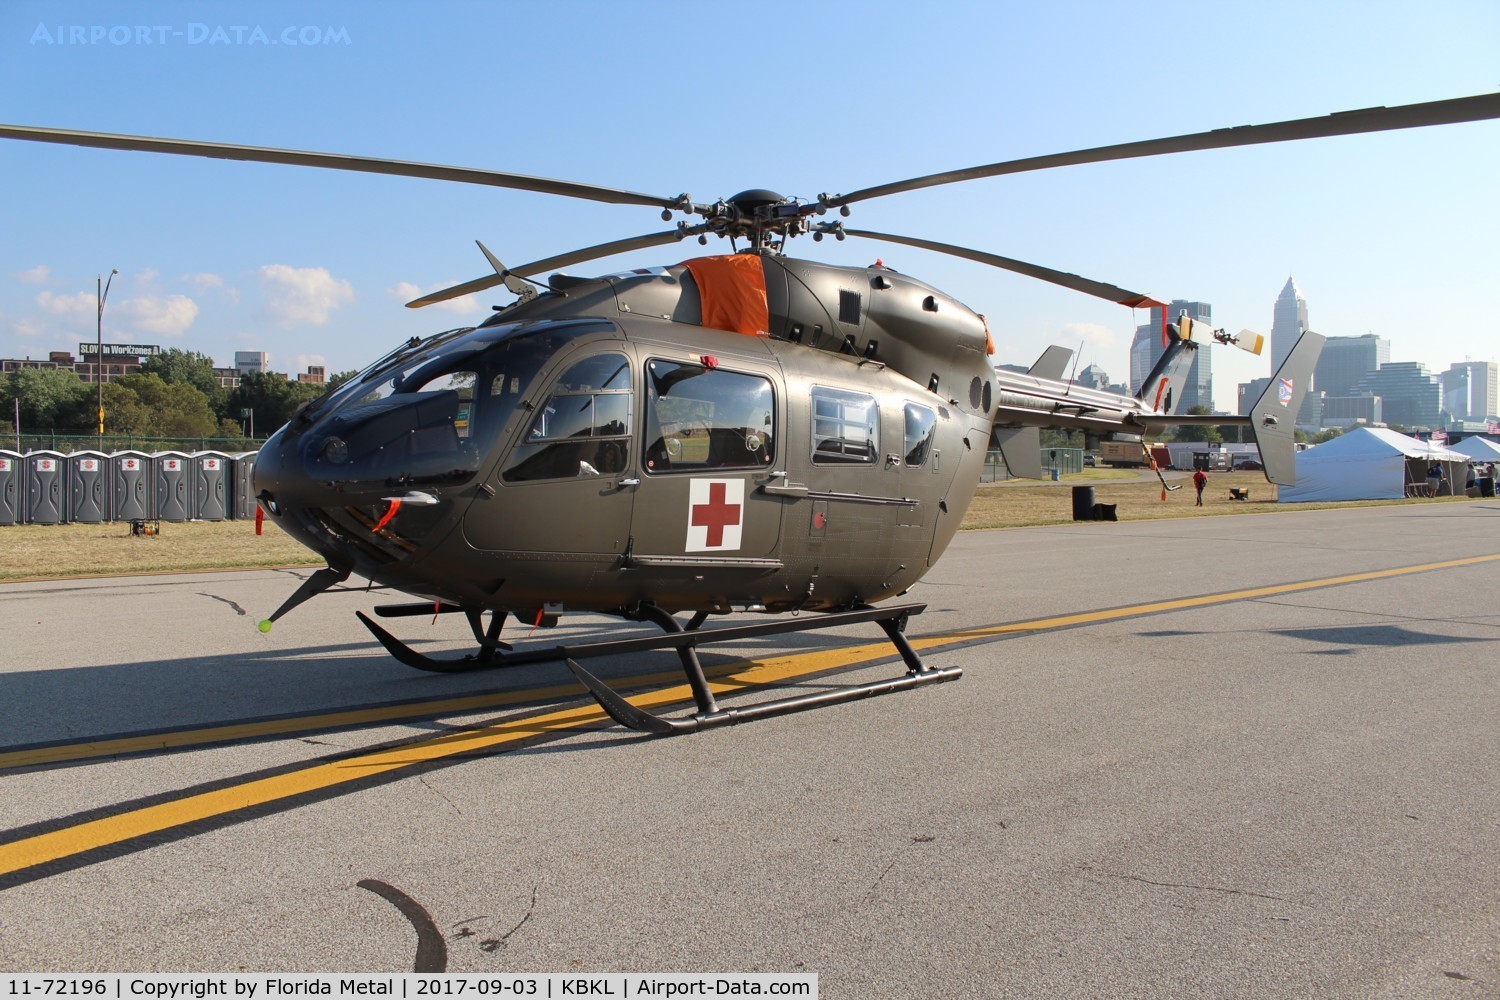 11-72196, 2011 EADS North America UH-72A Lakota C/N 9458, UH-72 zx